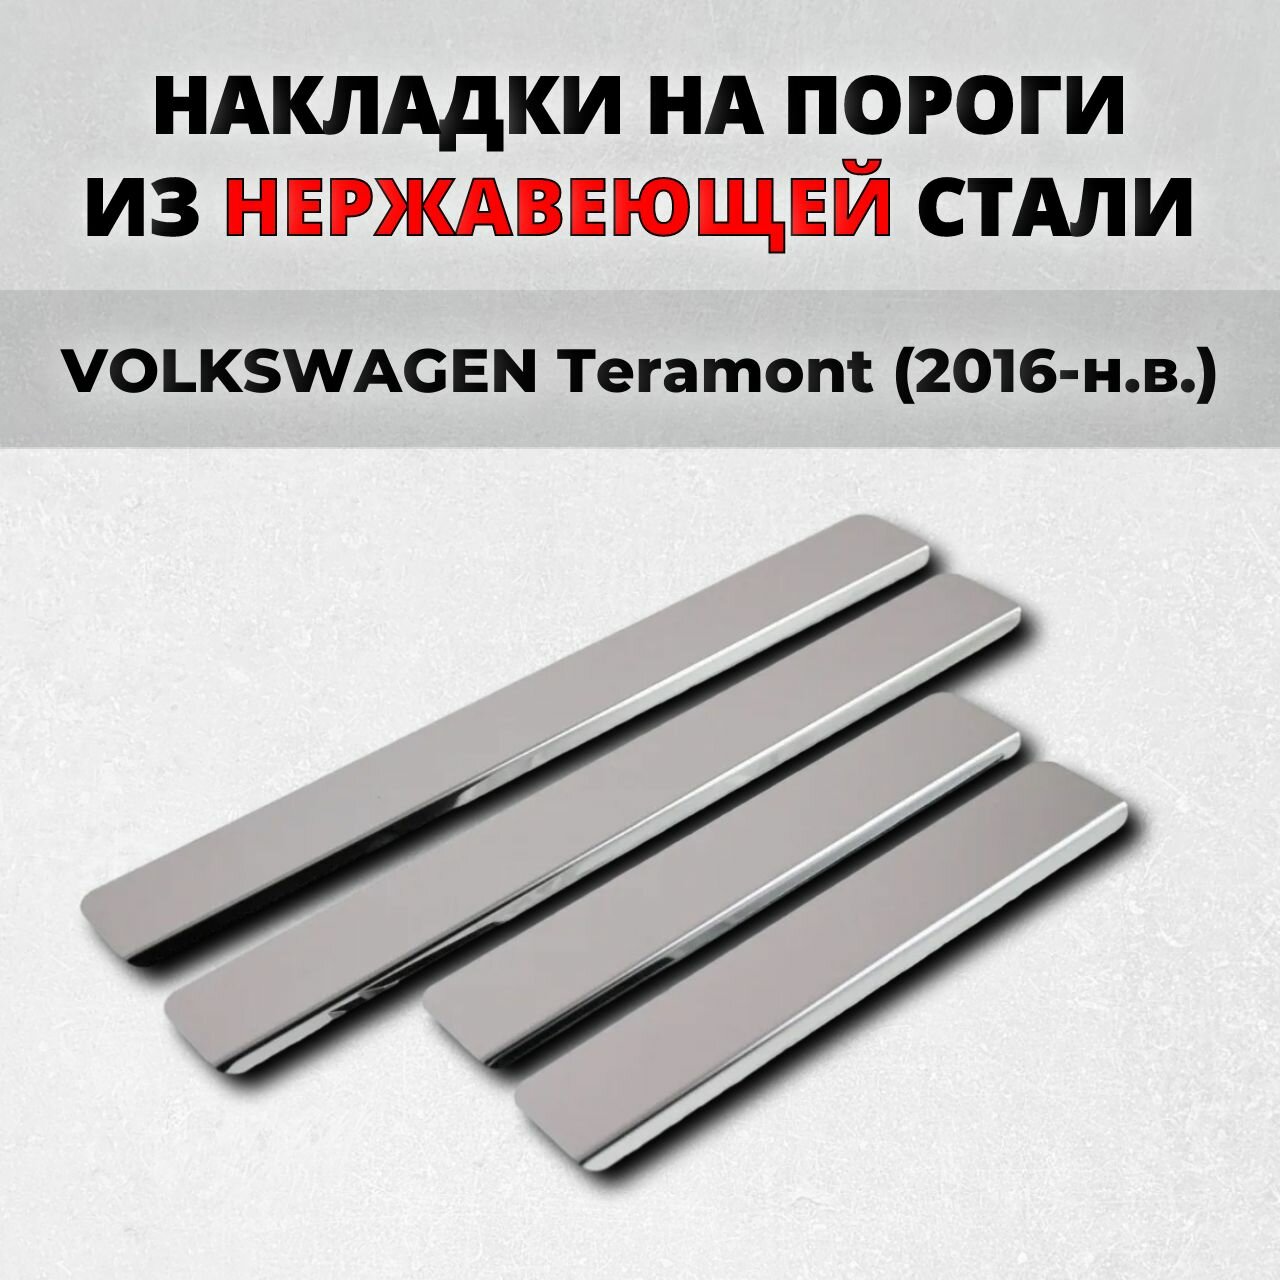 Накладки на пороги Фольксваген Терамонт 2016-н. в. из нержавеющей стали VOLKSWAGEN Teramont